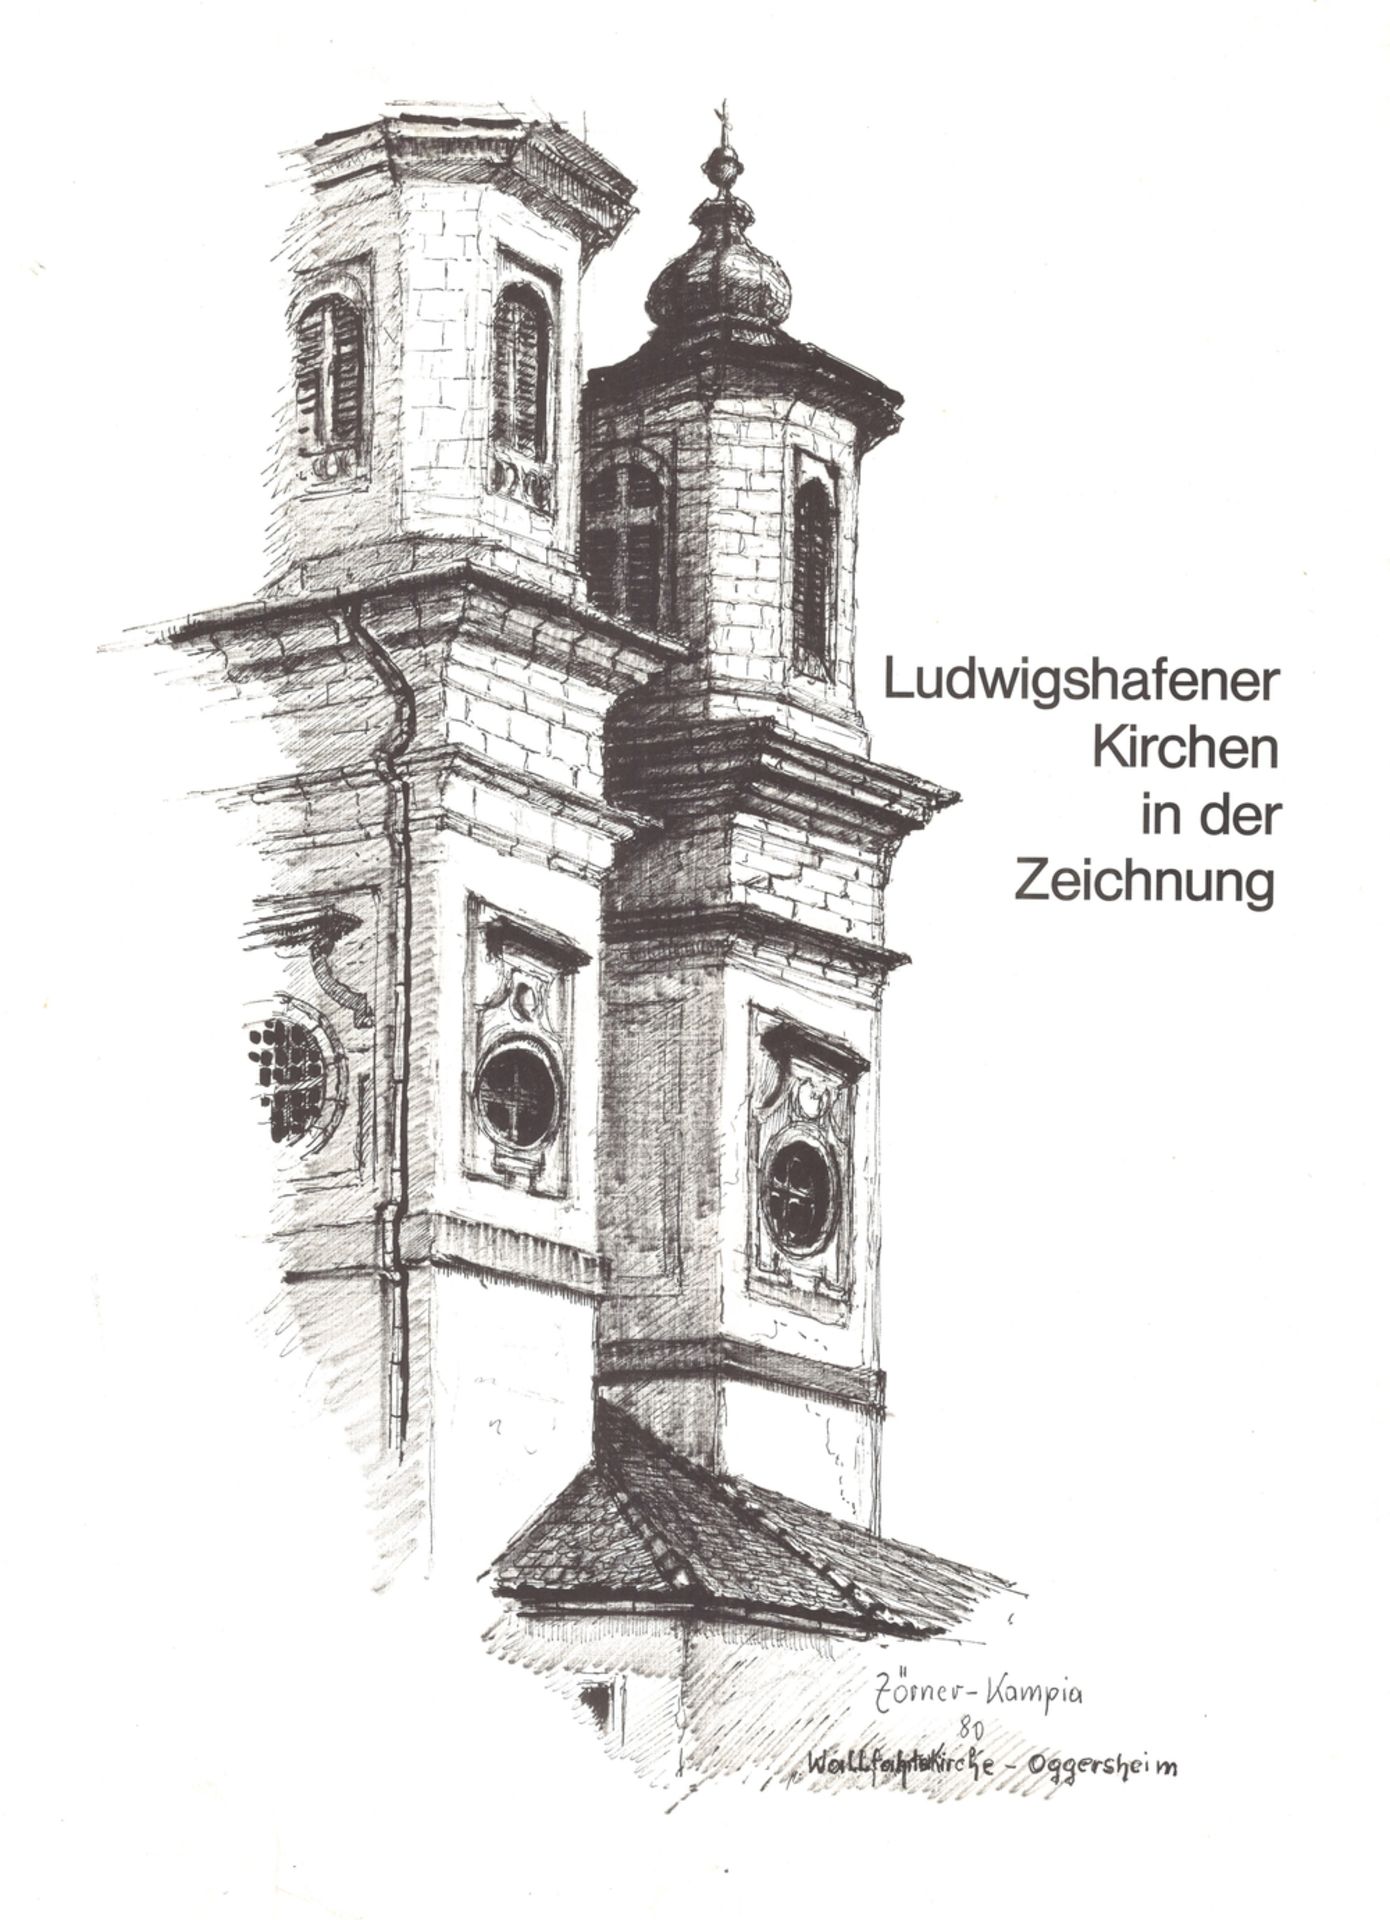 "Ludwigshafener Kirchen in der Zeichnung" Die Originale dieser Kunstmappe wurden im Auftrag von